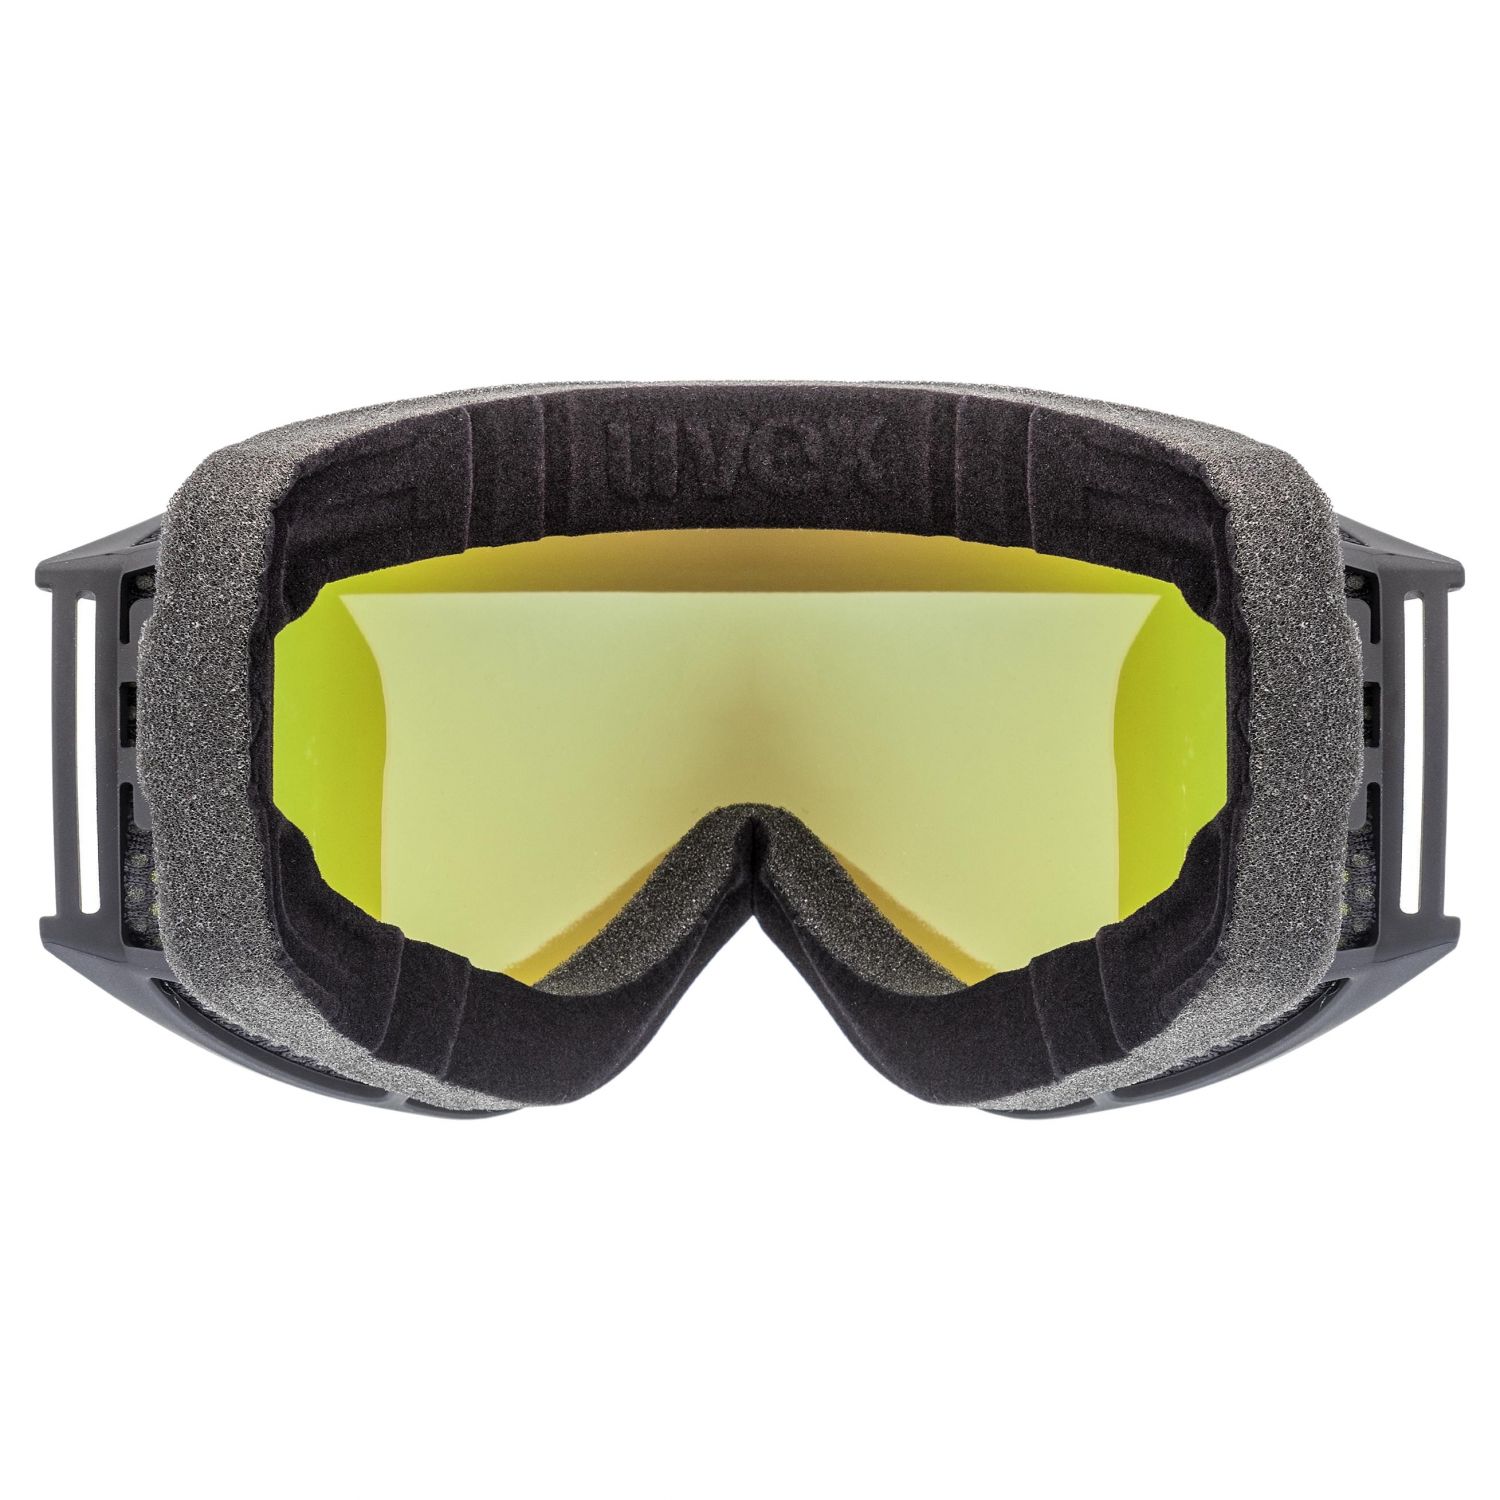 Uvex g.gl. 3000 CV, ski goggles, black mat